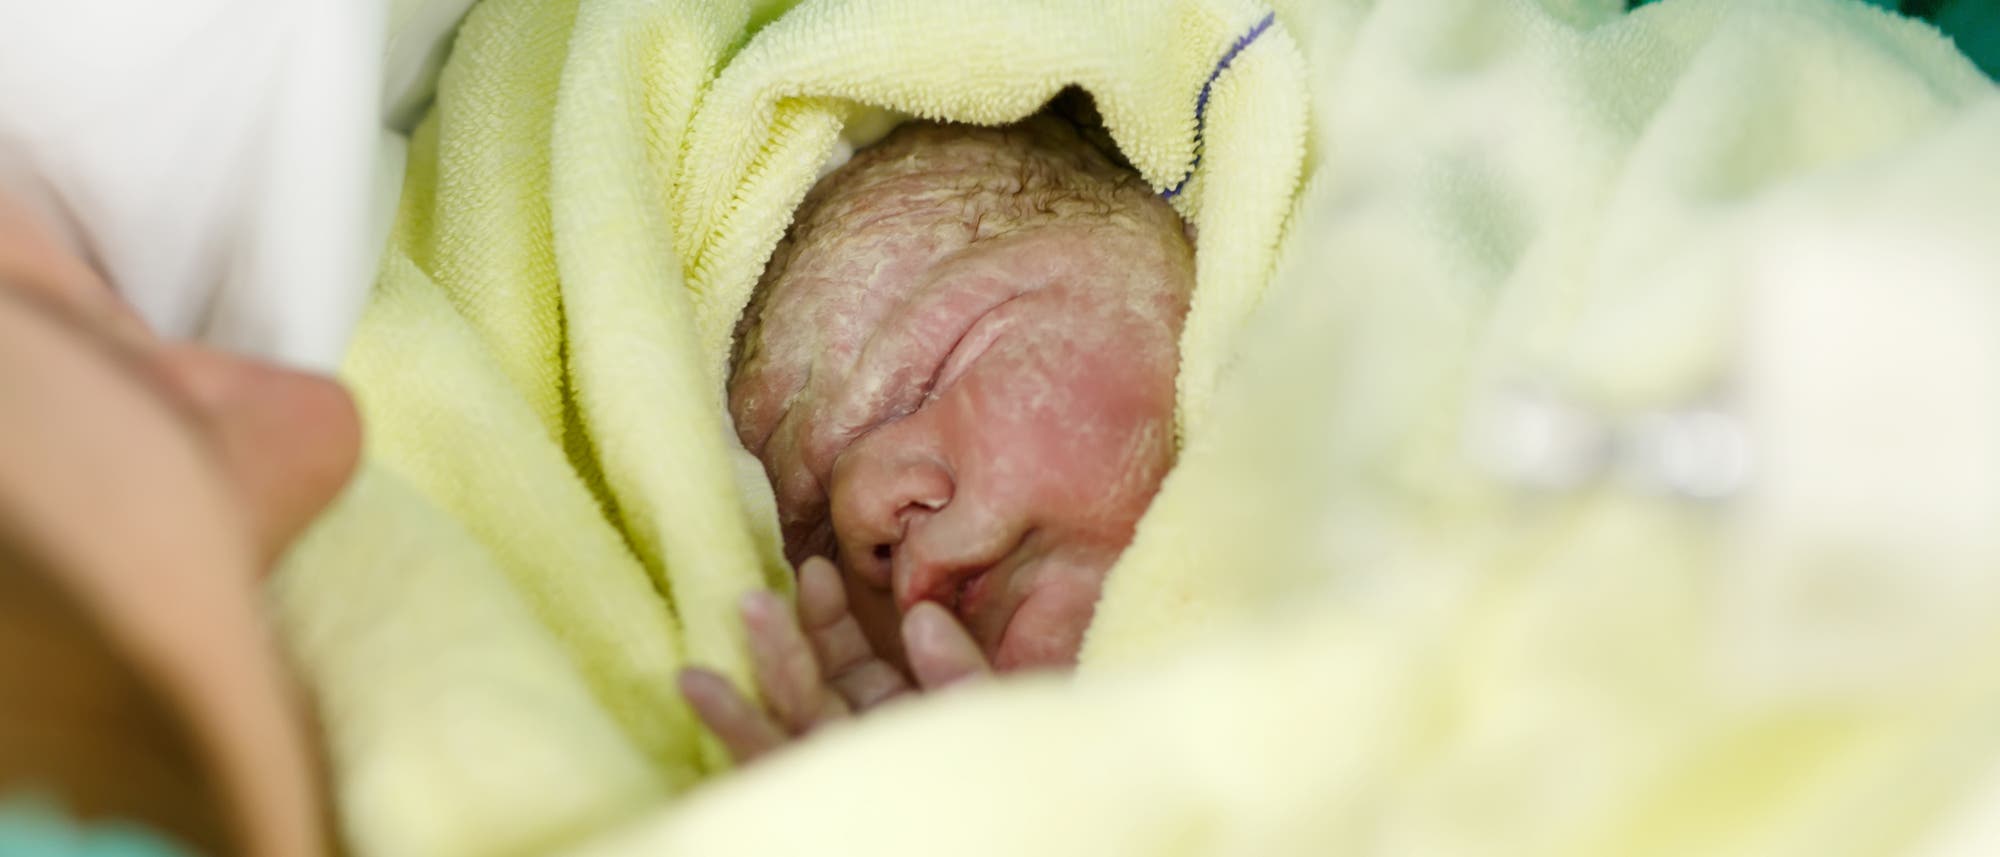 Kühlen hilft nicht allen Neugeborenen mit Sauerstoffmangel - Spektrum der  Wissenschaft